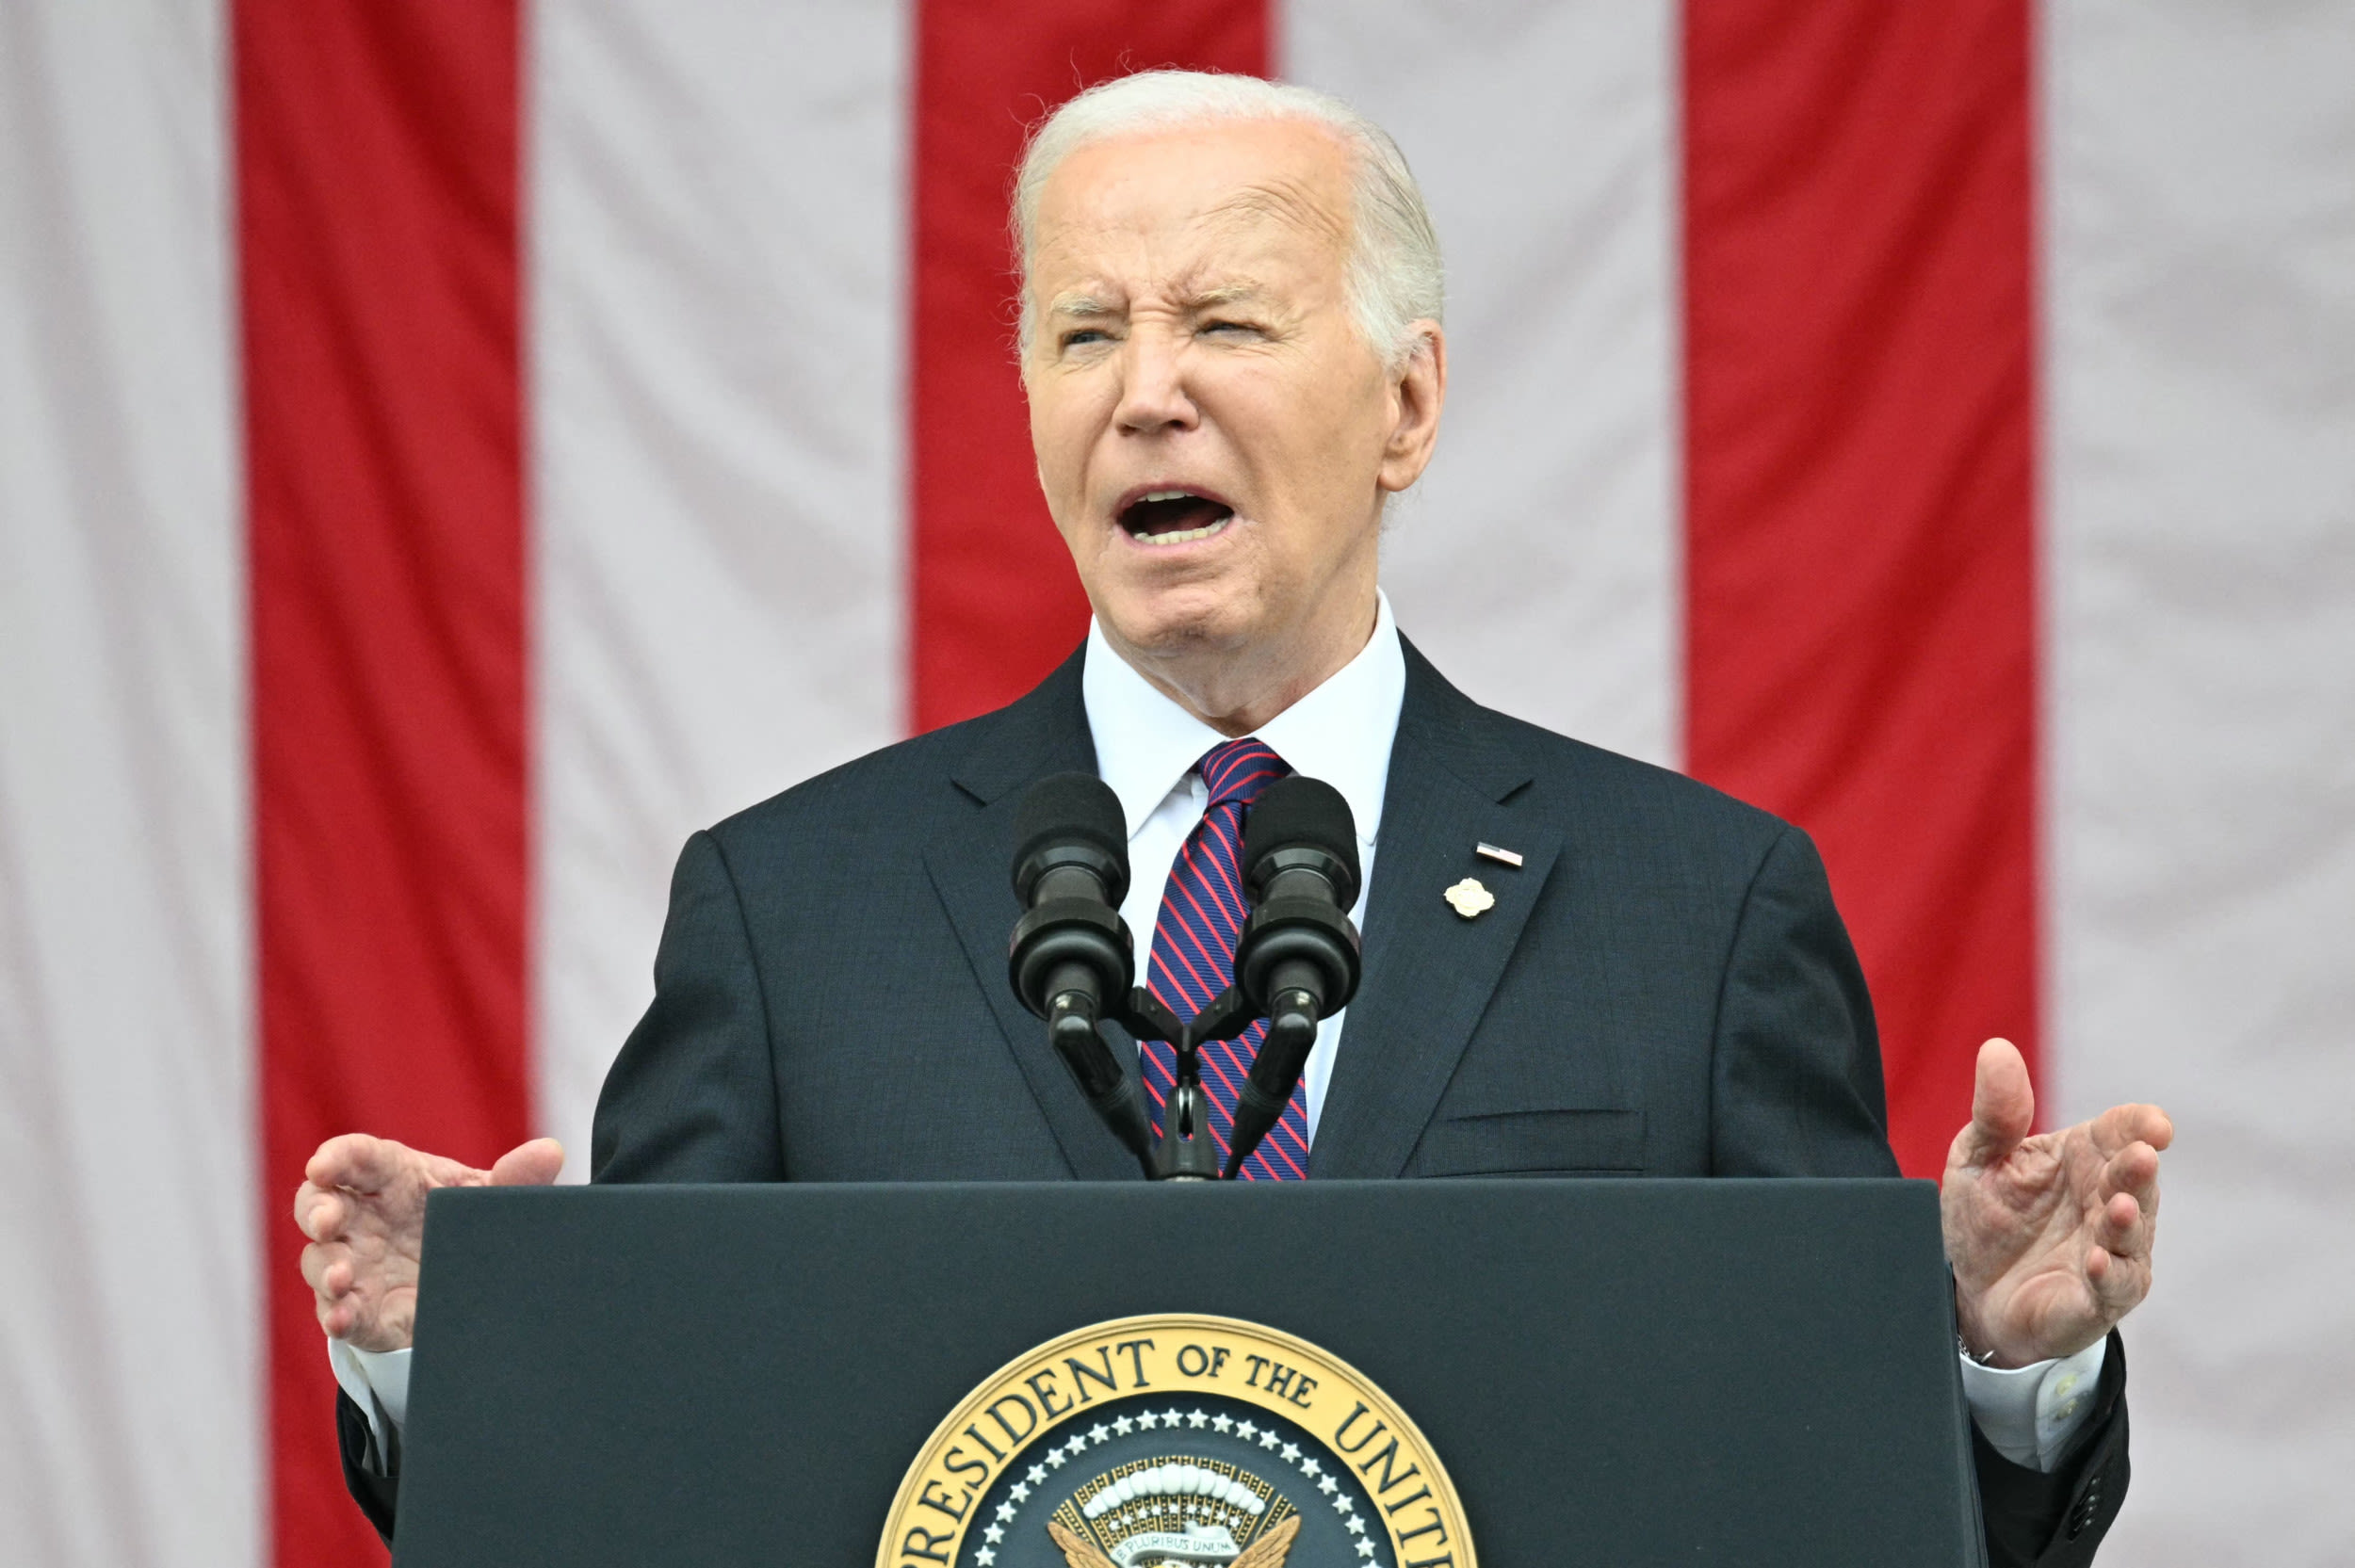 Joe Biden "sleeping" during Memorial Day speech raises questions